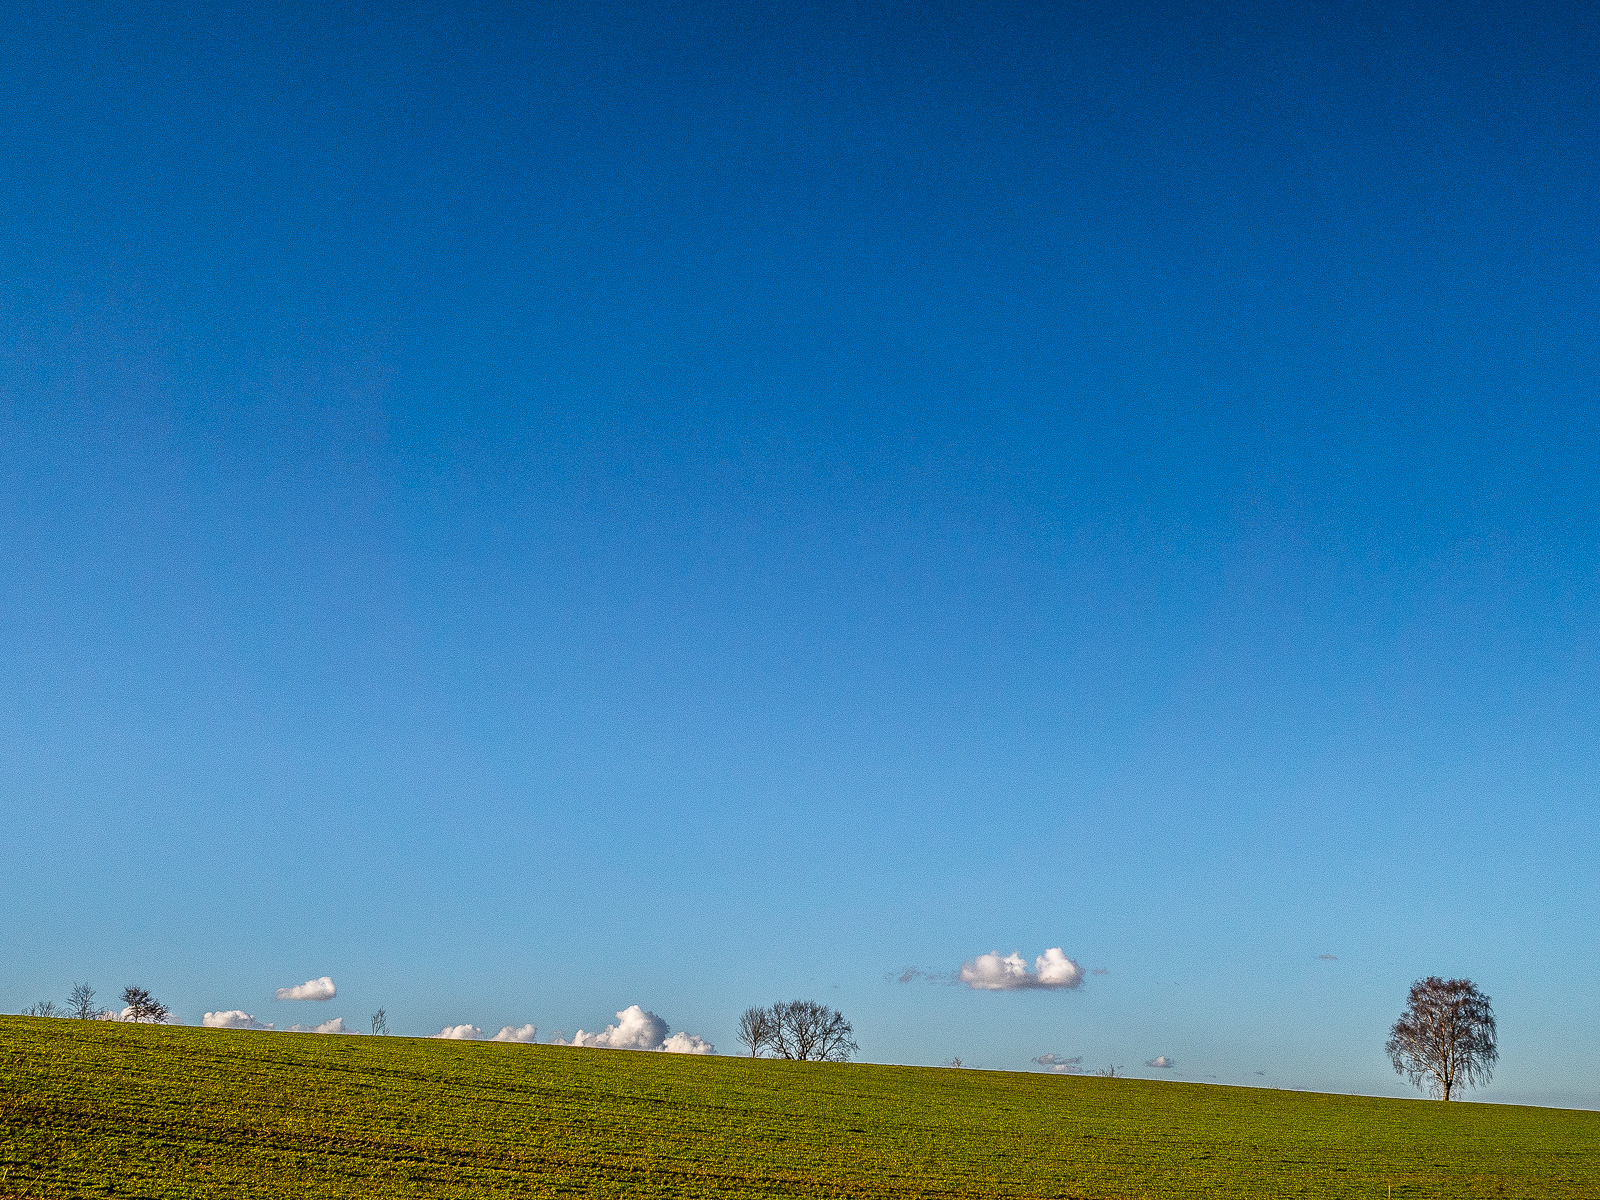 im Vordergrund ein schmaler Streifen grünen Ackerlandes, die Horizontlinie fällt nach rechts ab. Längs des Horizonts mehrere Baumsilhouetten und knapp darüber diverse Schäfchenwolken. Der größte Teil des Bildes ist nach oben dunkler werdender makellos blauer Himmel.